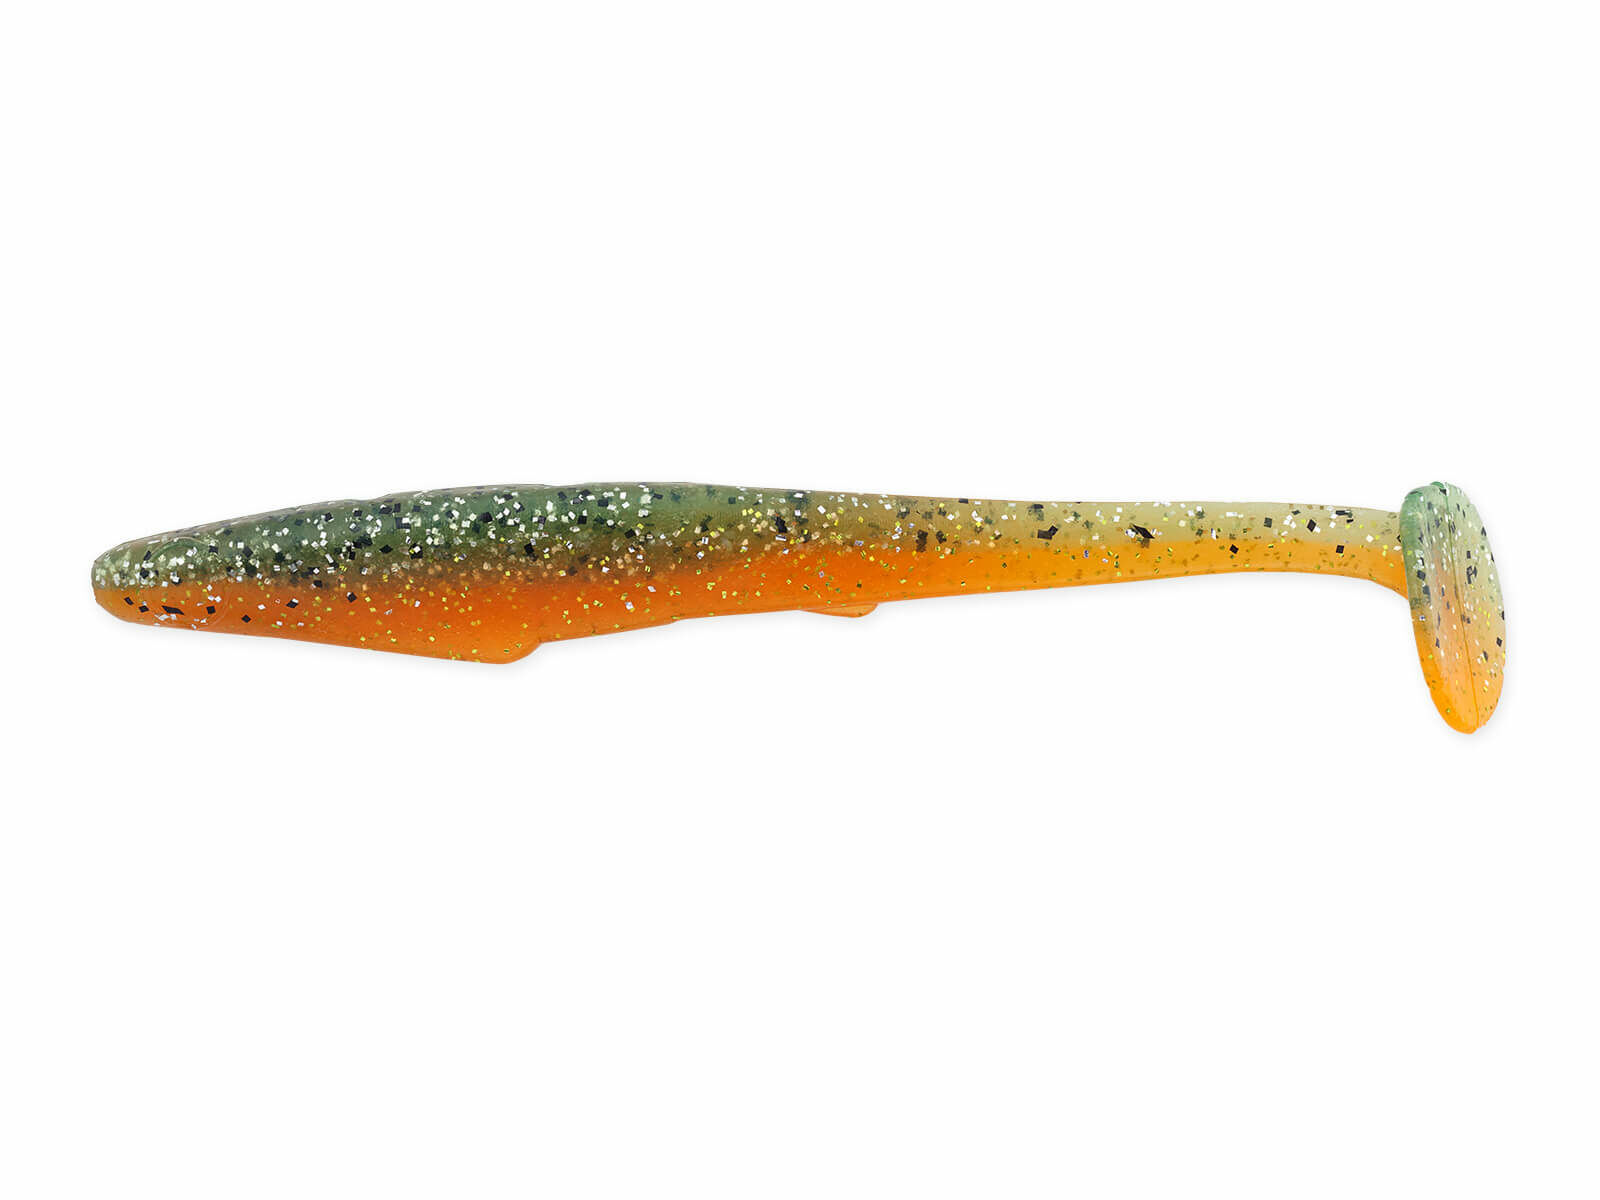 4" Rockvibe Shiner - Orange Baitfish